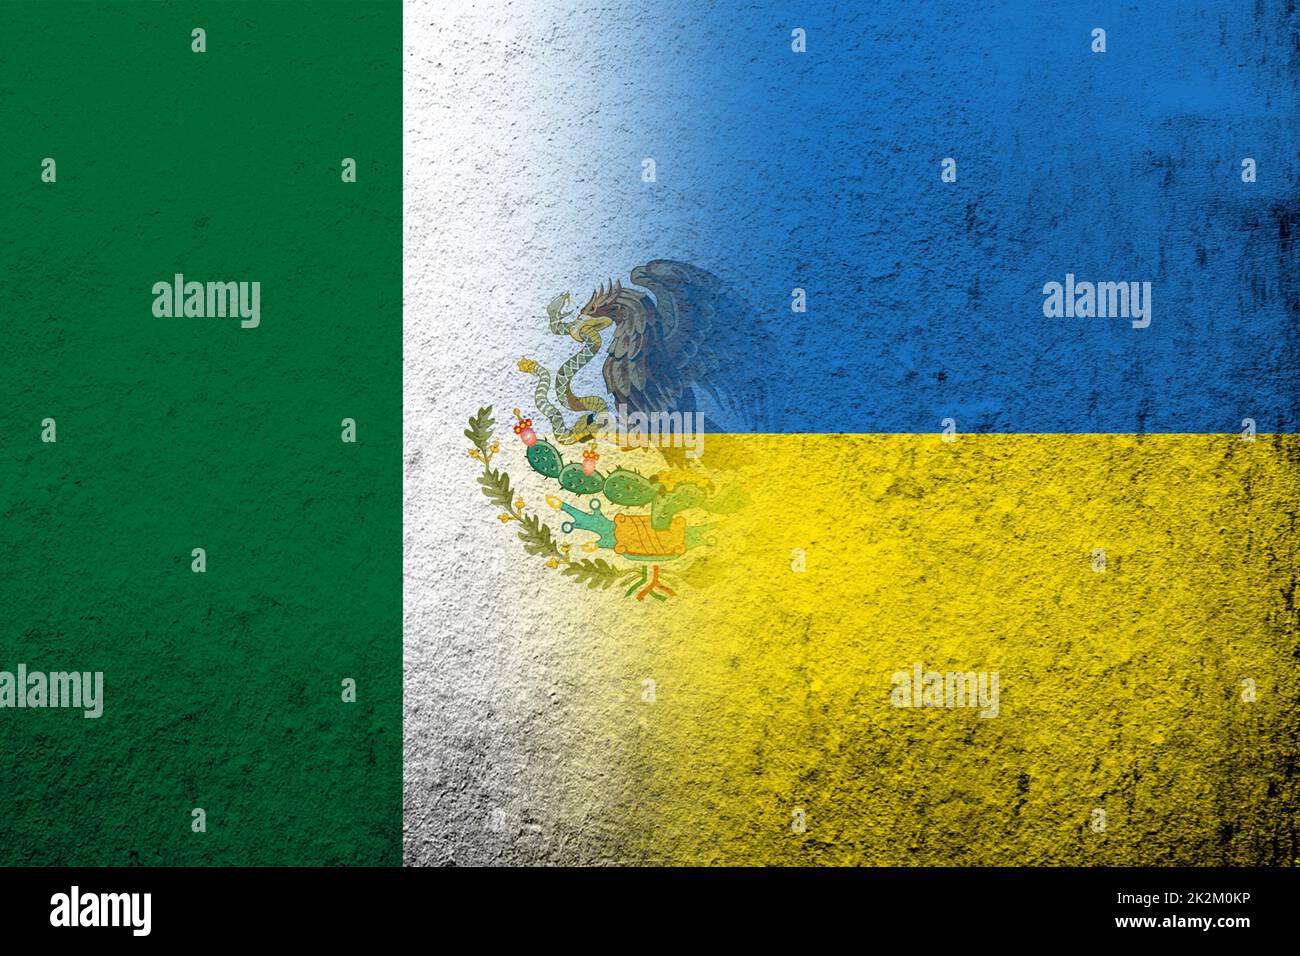 Estados Unidos Mexicanos Bandera Nacional con Bandera Nacional de Ucrania. Fondo grunge Foto de stock